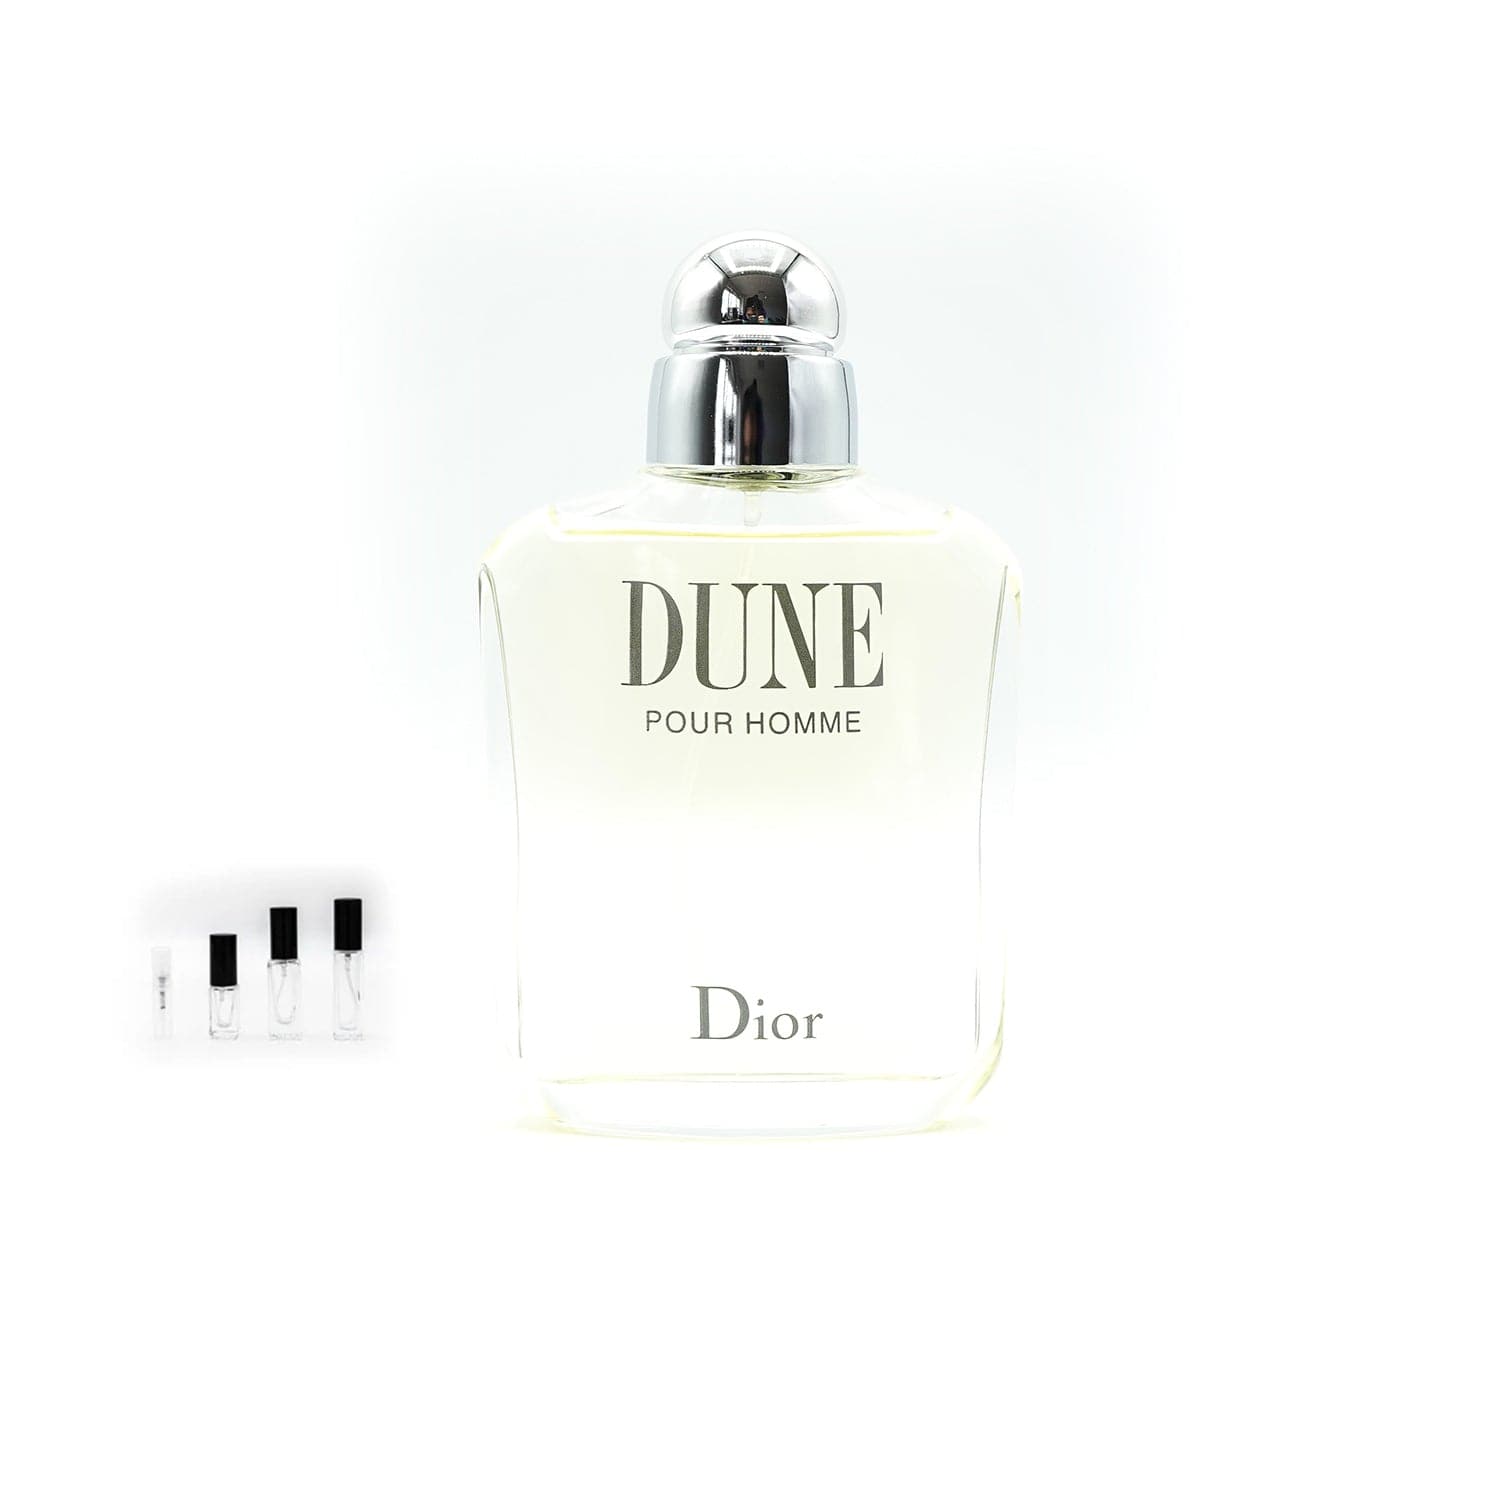 Dior | Dune pour Homme Abfüllung-Parfümproben